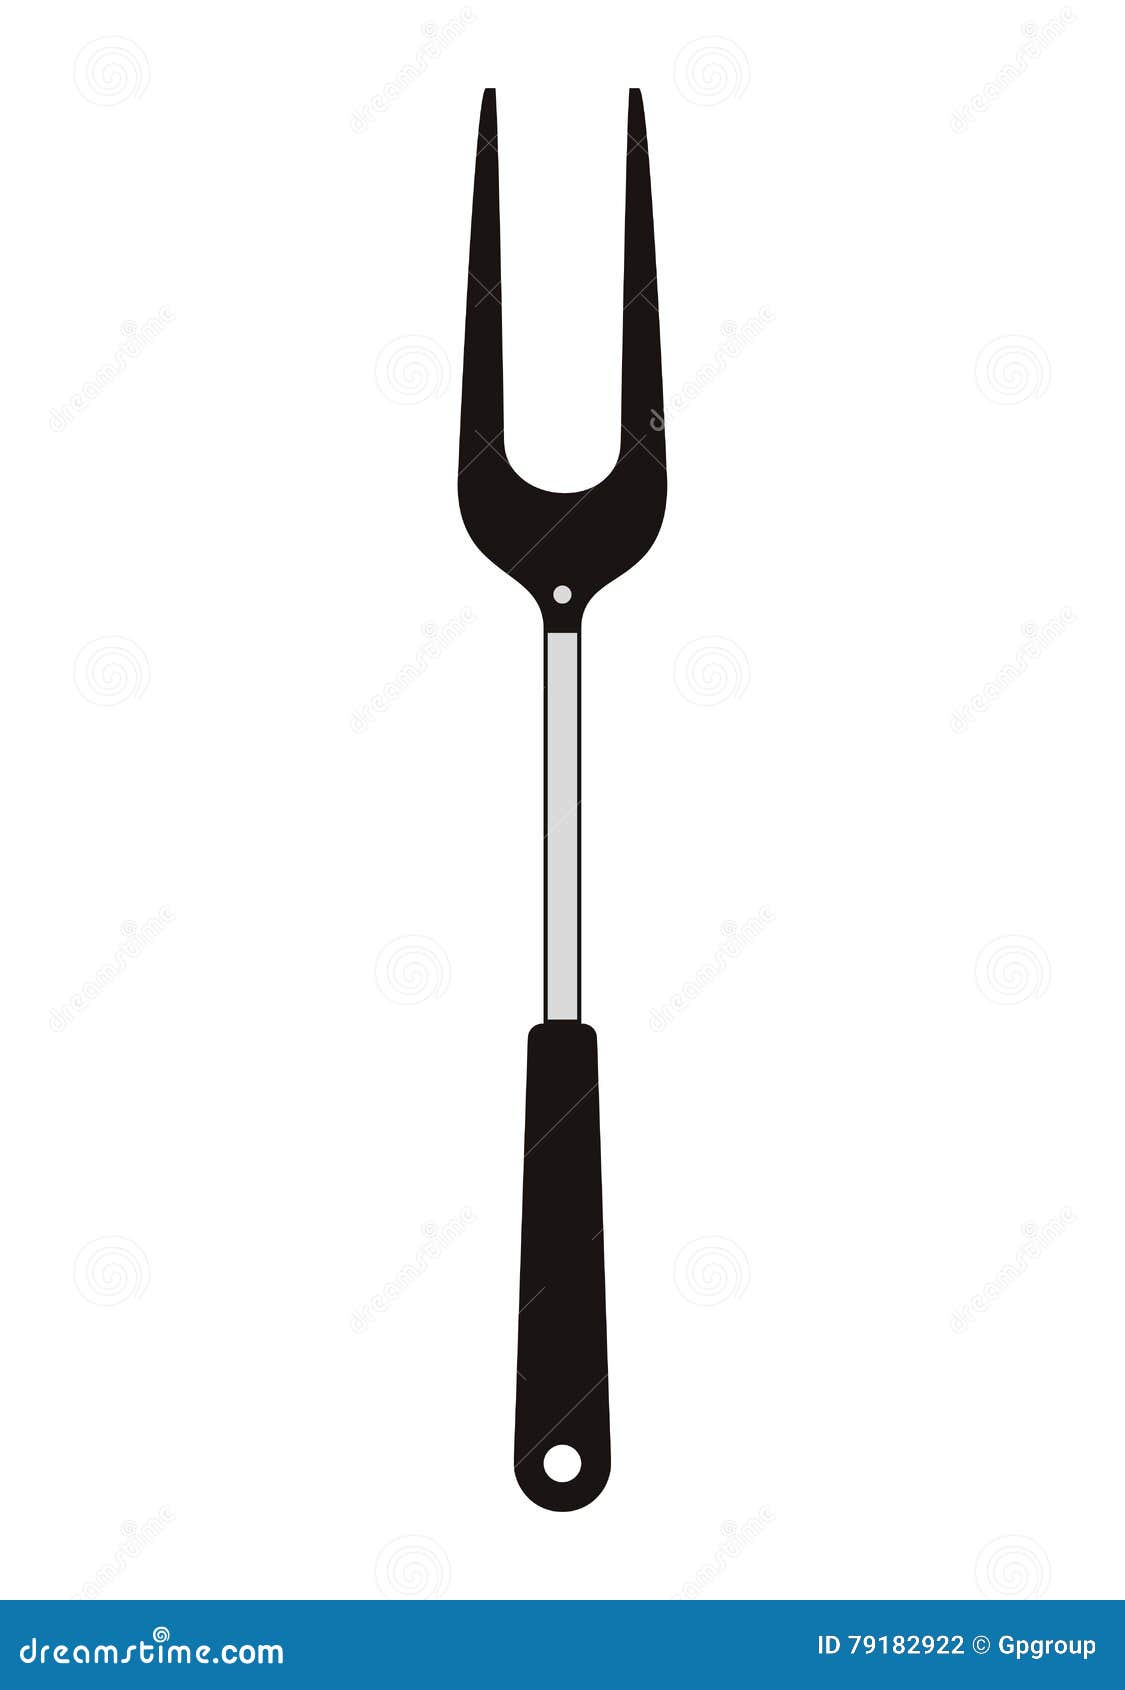 https://thumbs.dreamstime.com/z/bbq-cooking-utensils-fork-grill-utensil-icon-steak-house-food-restaurant-theme-isolated-design-vector-illustration-79182922.jpg